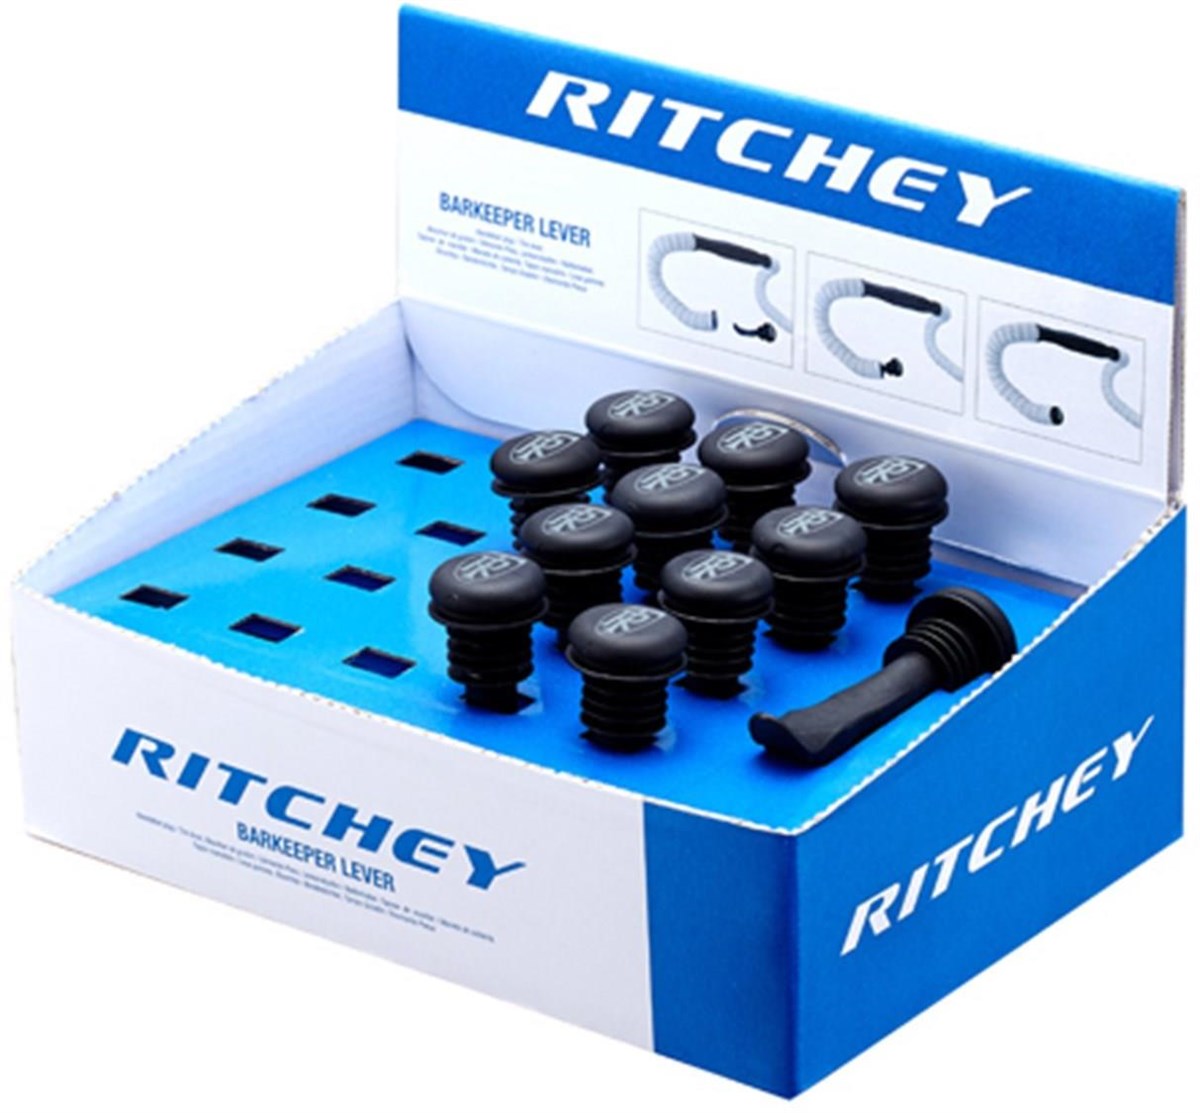 Ritchey Ritchey Tool Barkeeper (Retail Box 20pcs) product image